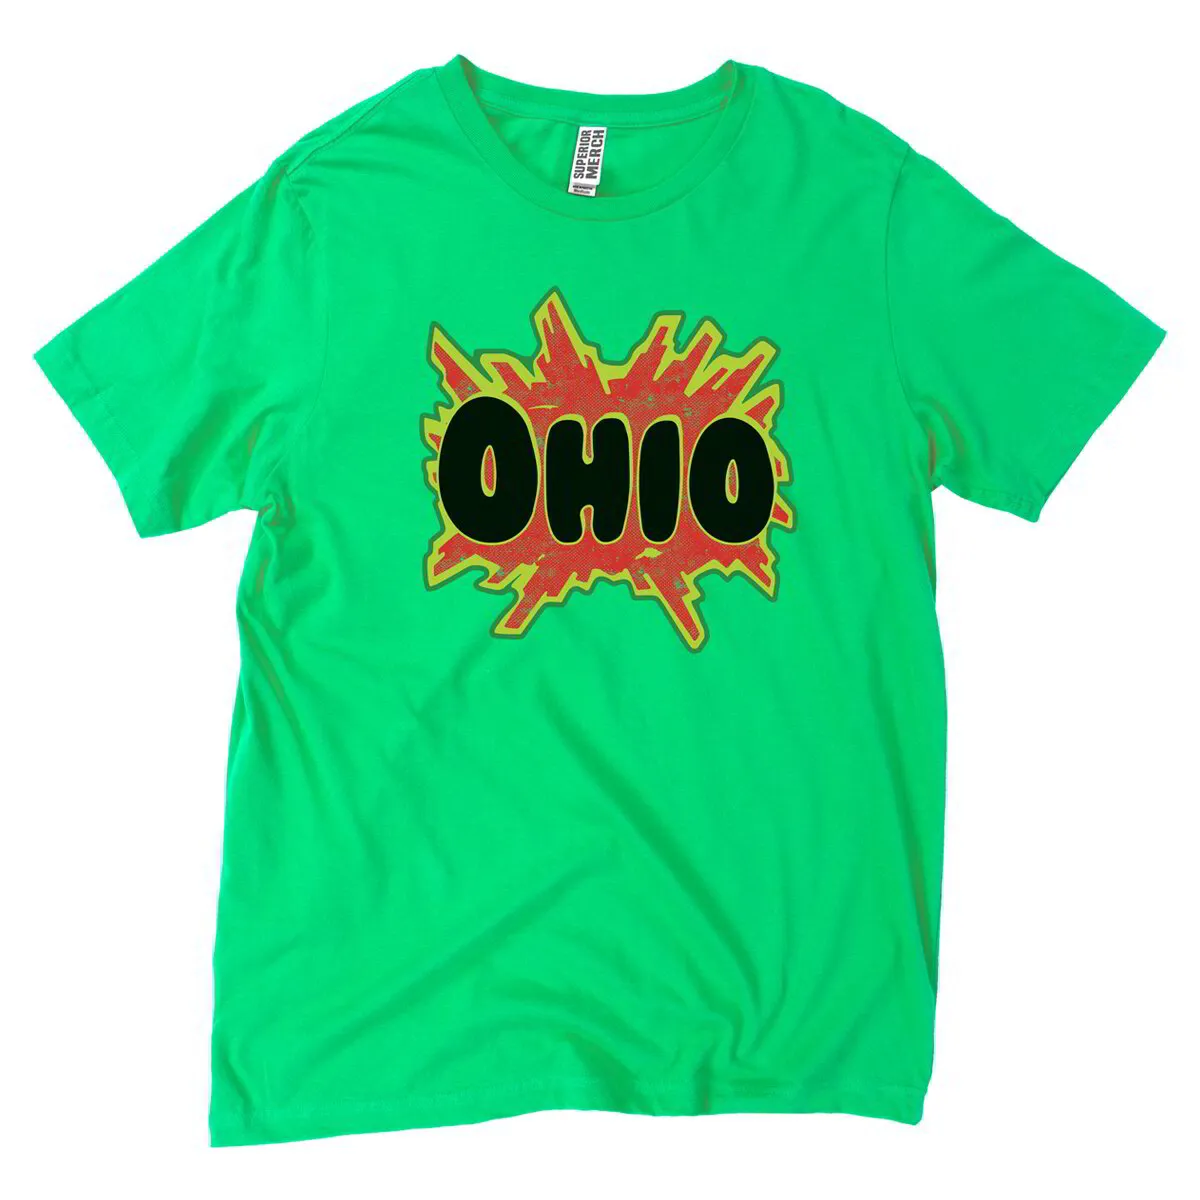 Ohio 1990's Vintage Style Nostalgia Blast T-Shirt